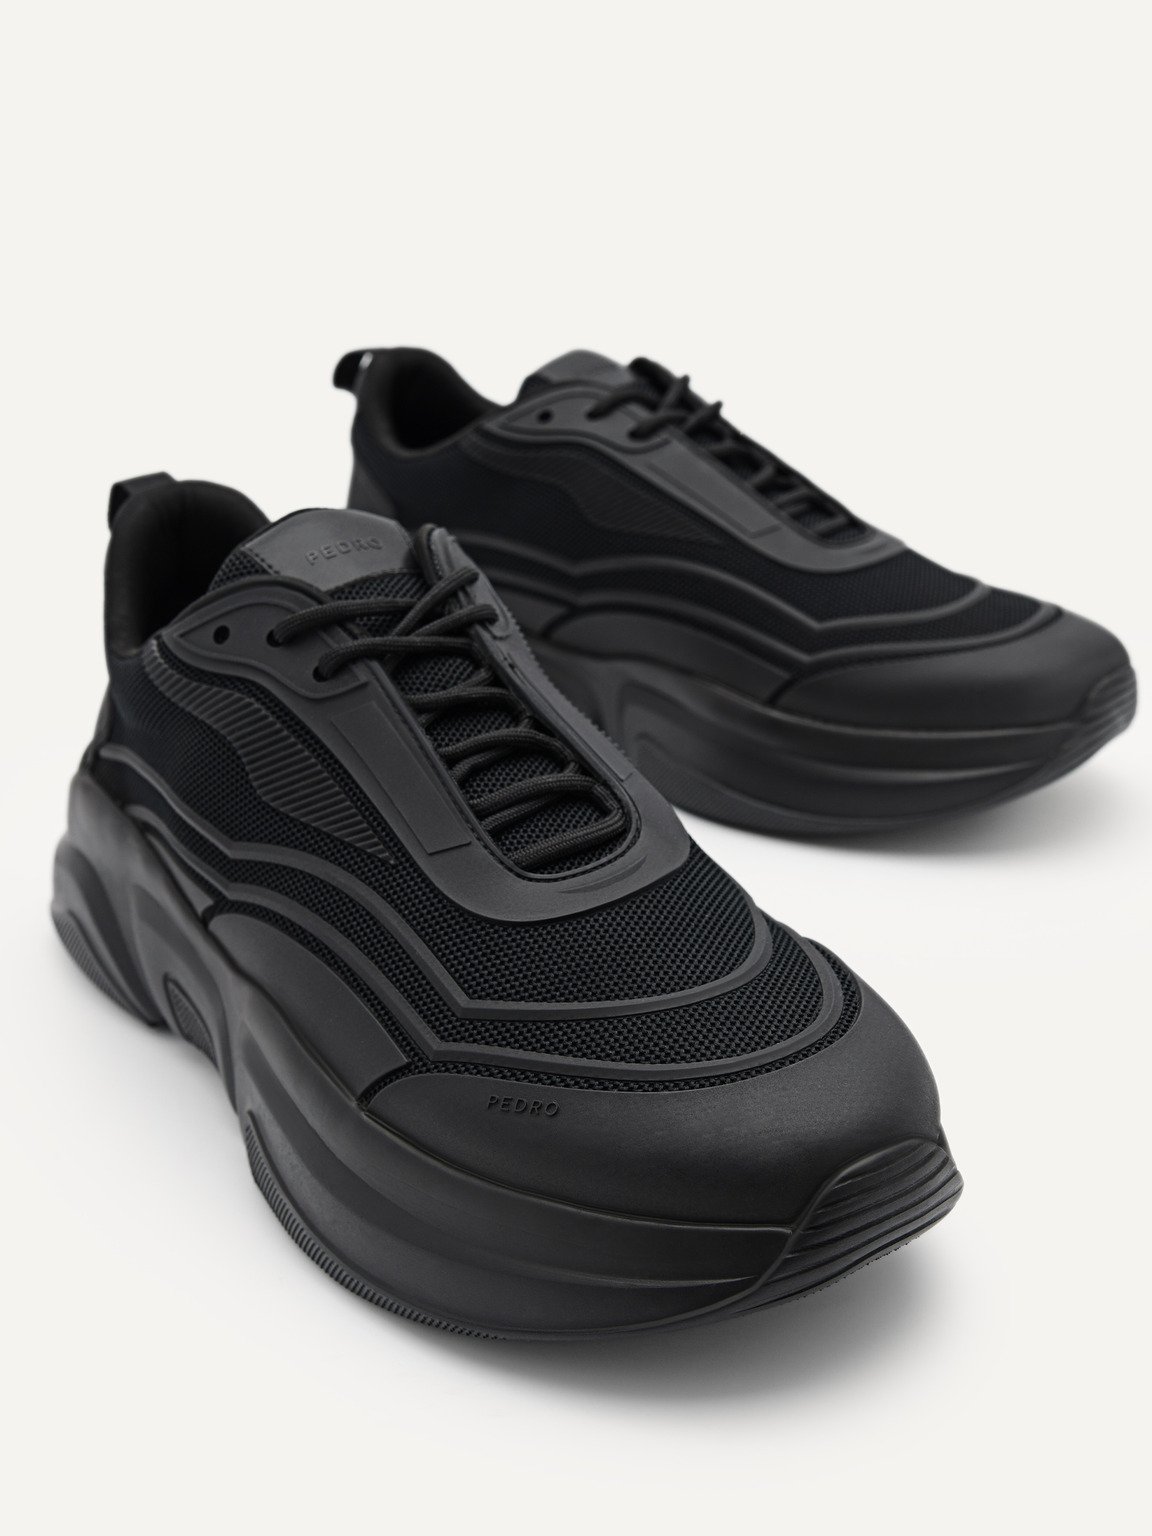 Men's Altura Sneakers, Black